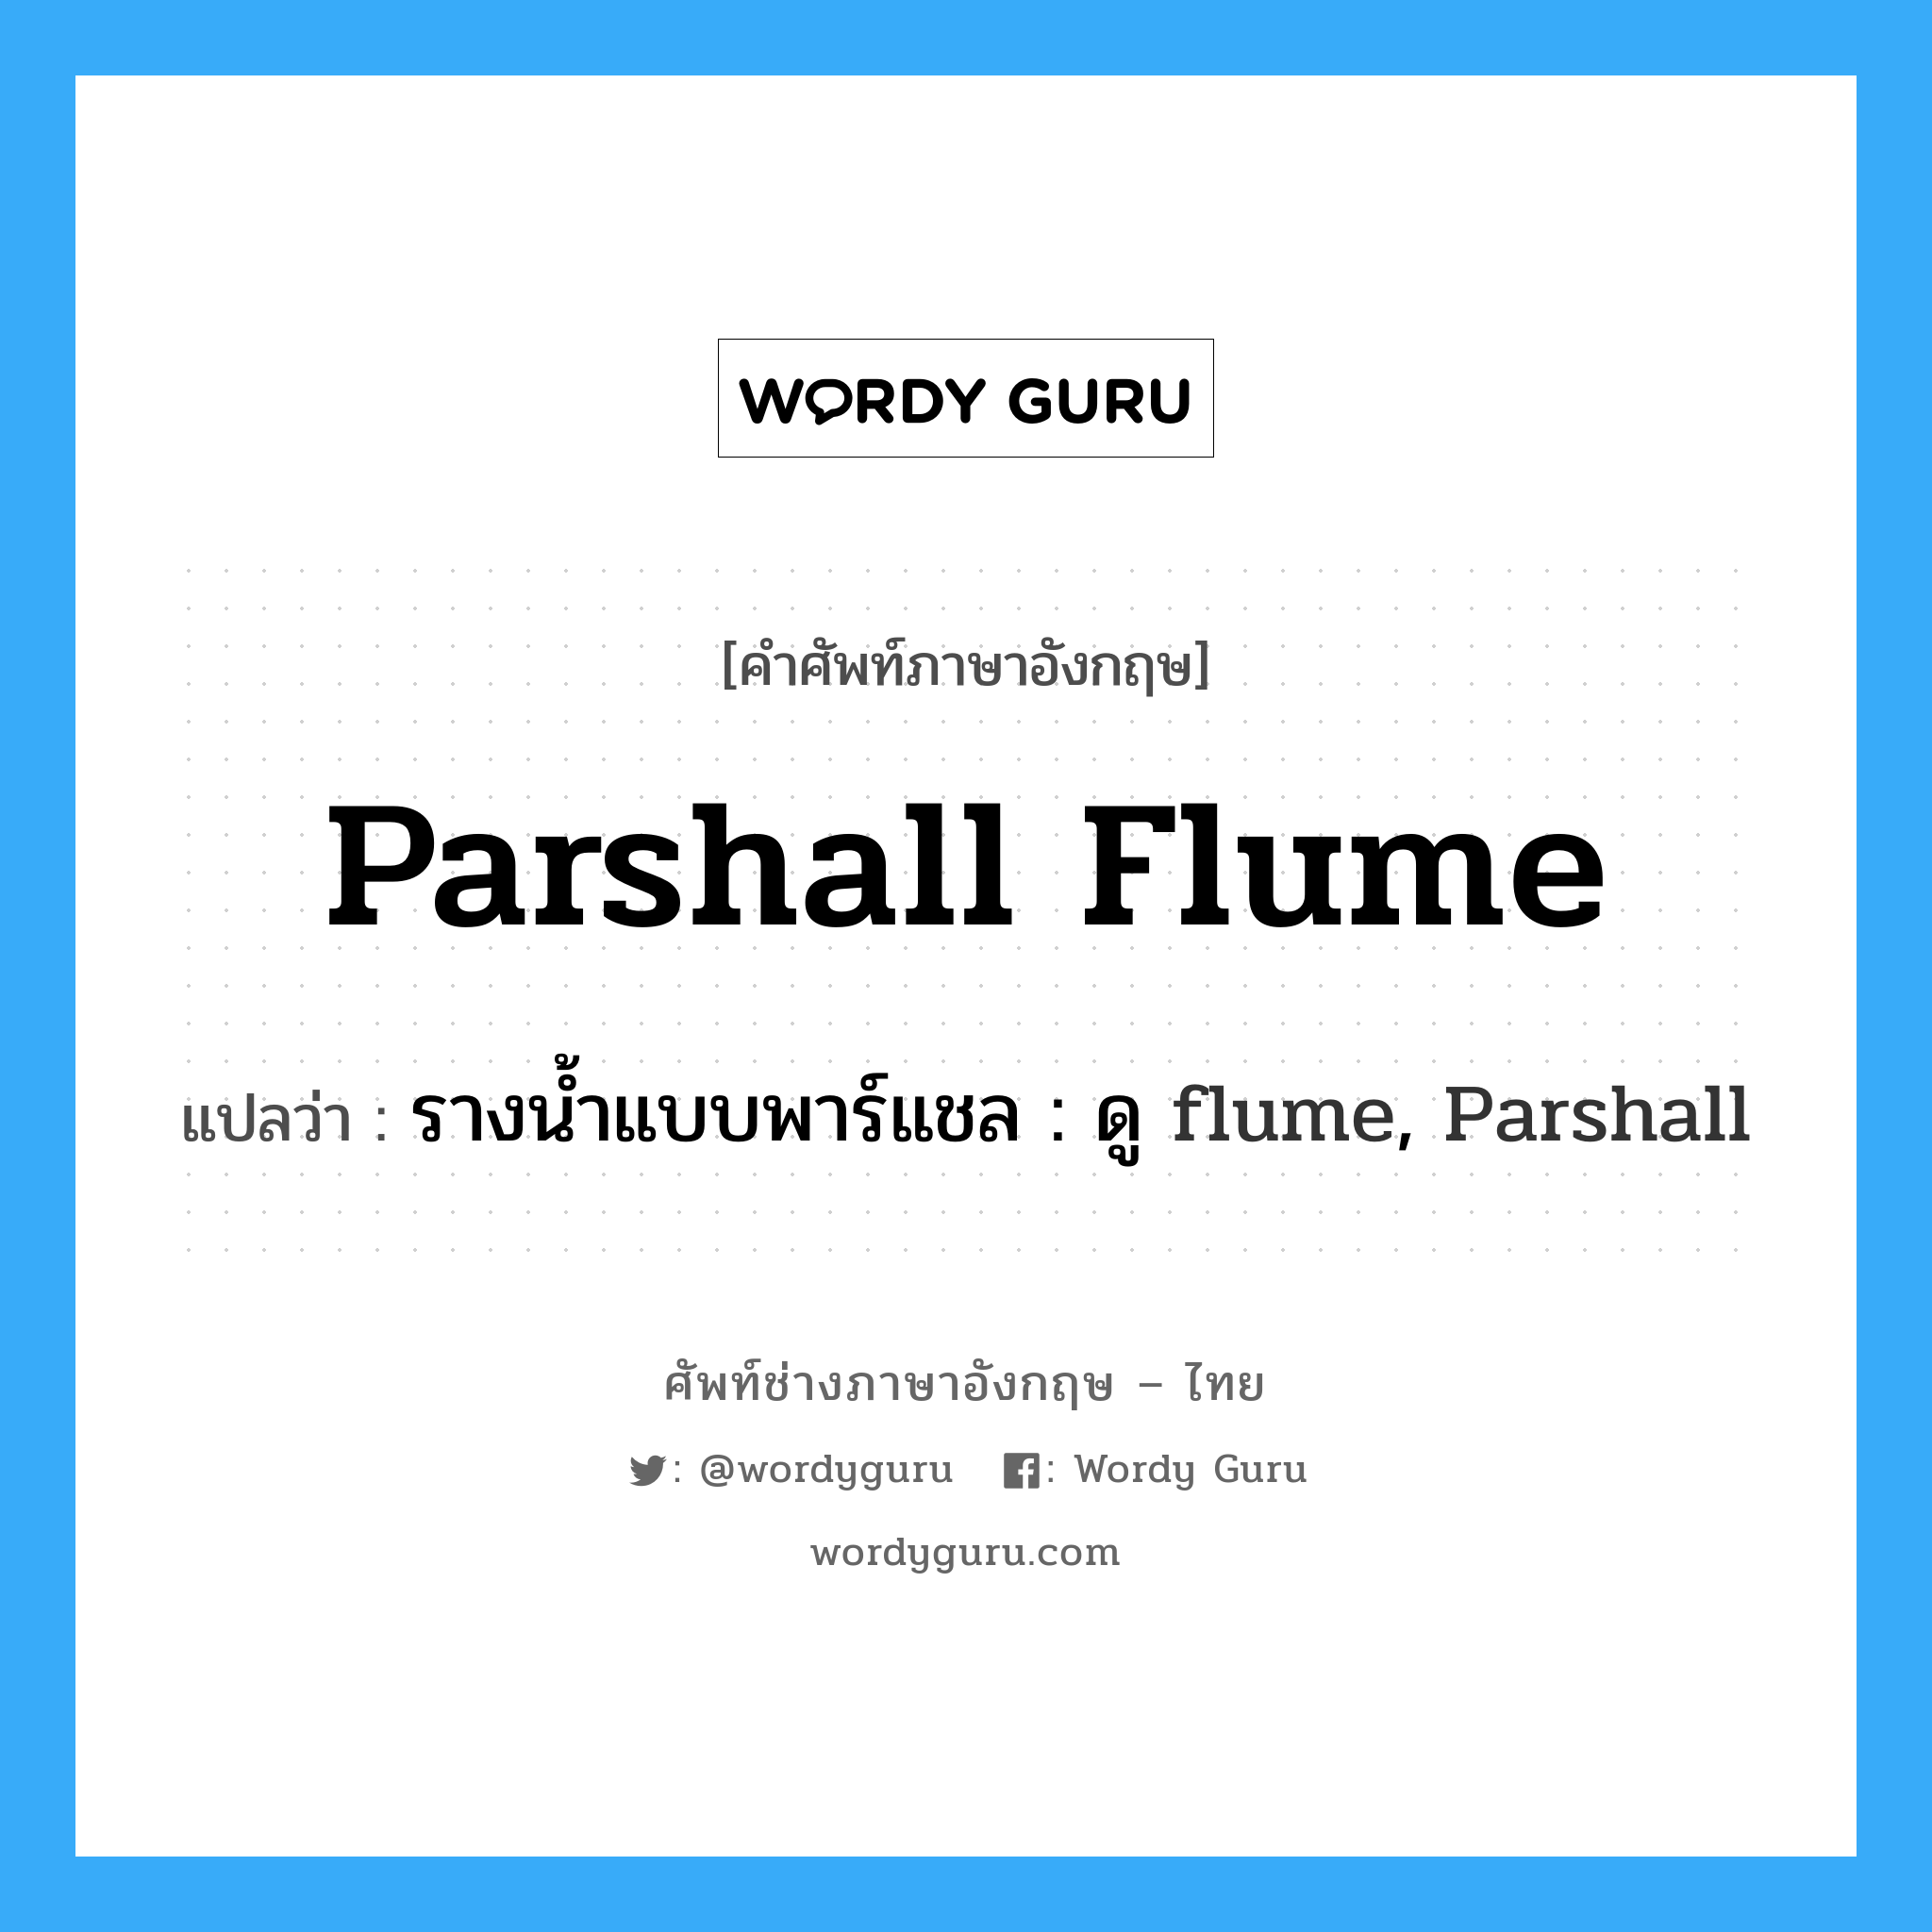 รางน้ำแบบพาร์แชล : ดู flume, Parshall ภาษาอังกฤษ?, คำศัพท์ช่างภาษาอังกฤษ - ไทย รางน้ำแบบพาร์แชล : ดู flume, Parshall คำศัพท์ภาษาอังกฤษ รางน้ำแบบพาร์แชล : ดู flume, Parshall แปลว่า Parshall flume